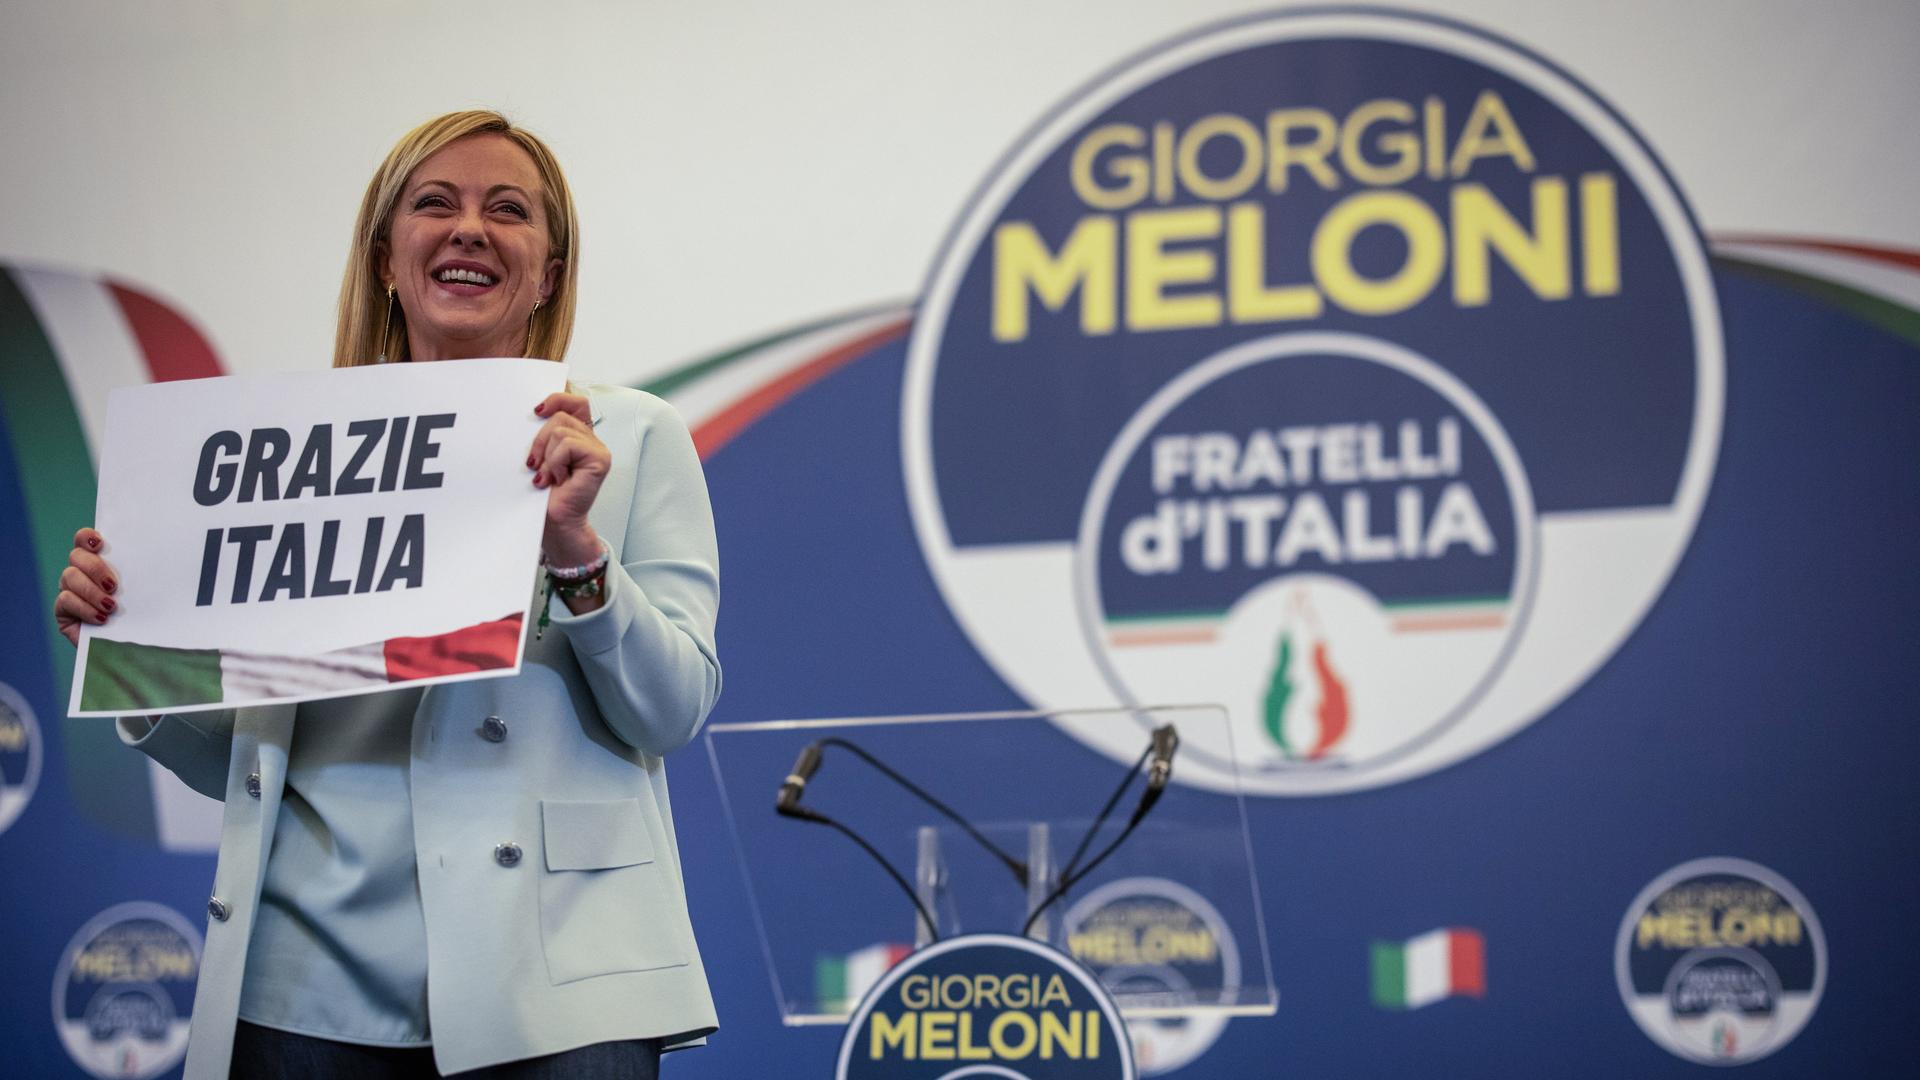 Giorgia Meloni, Vorsitzende der rechtspopulistischen Partei Fratelli d'Italia (Brüder Italiens), hält ein Schild mit der Aufschrift "Grazie Italia"